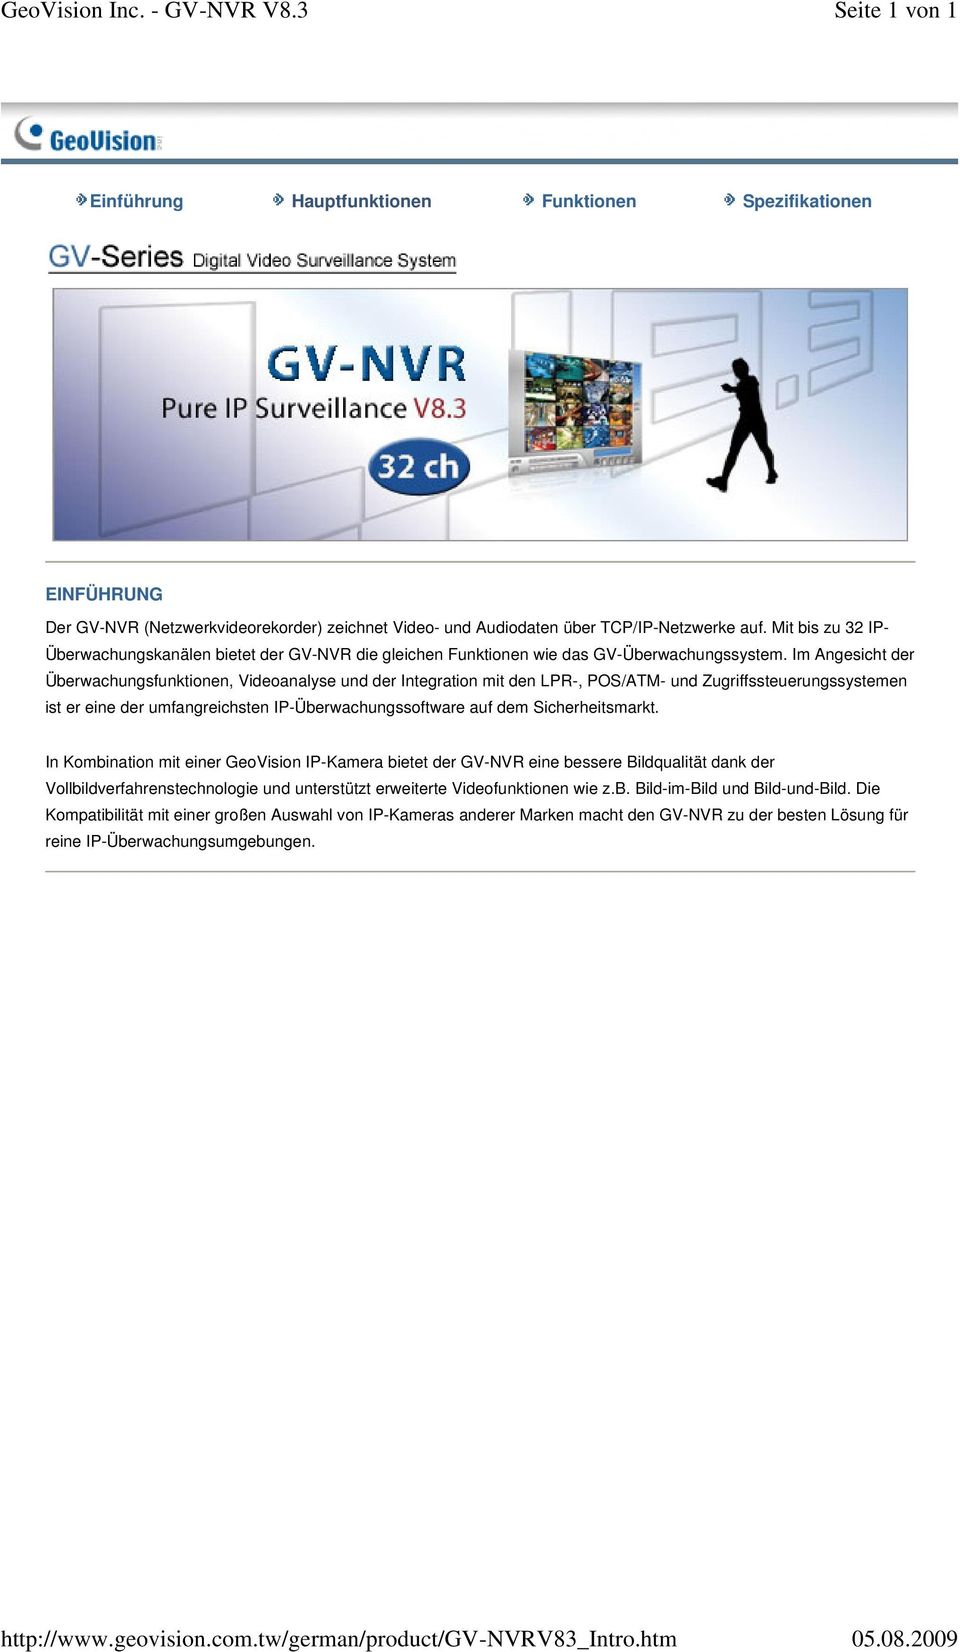 Mit bis zu 32 IP- Überwachungskanälen bietet der GV-NVR die gleichen Funktionen wie das GV-Überwachungssystem.